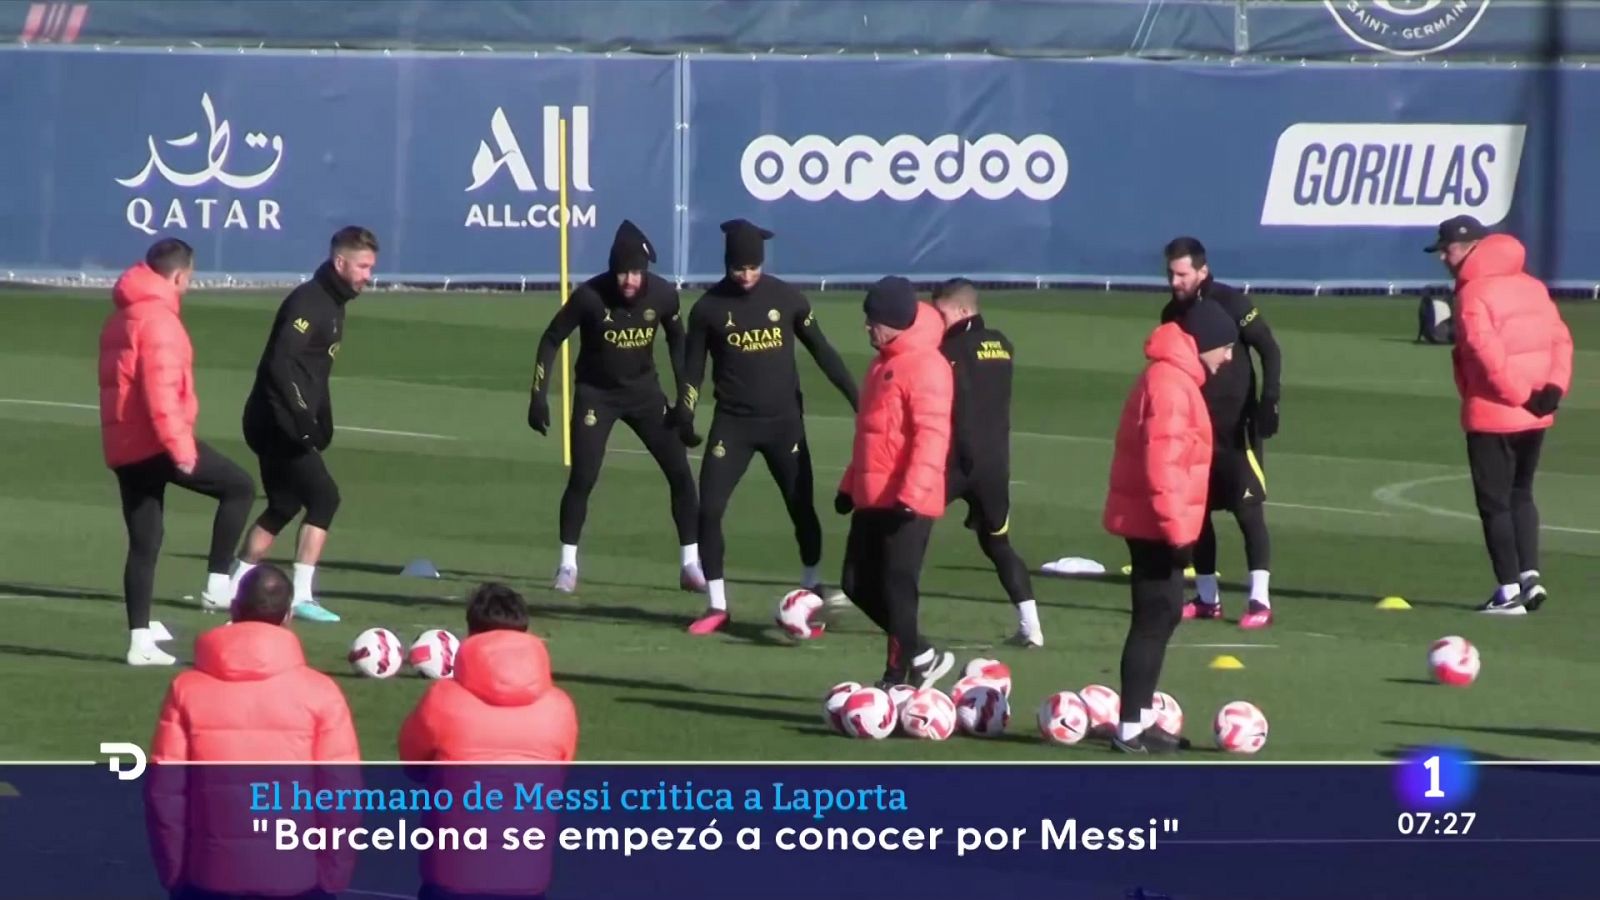 El hermano de Messi critica a Laporta: "Es un desagradecido"